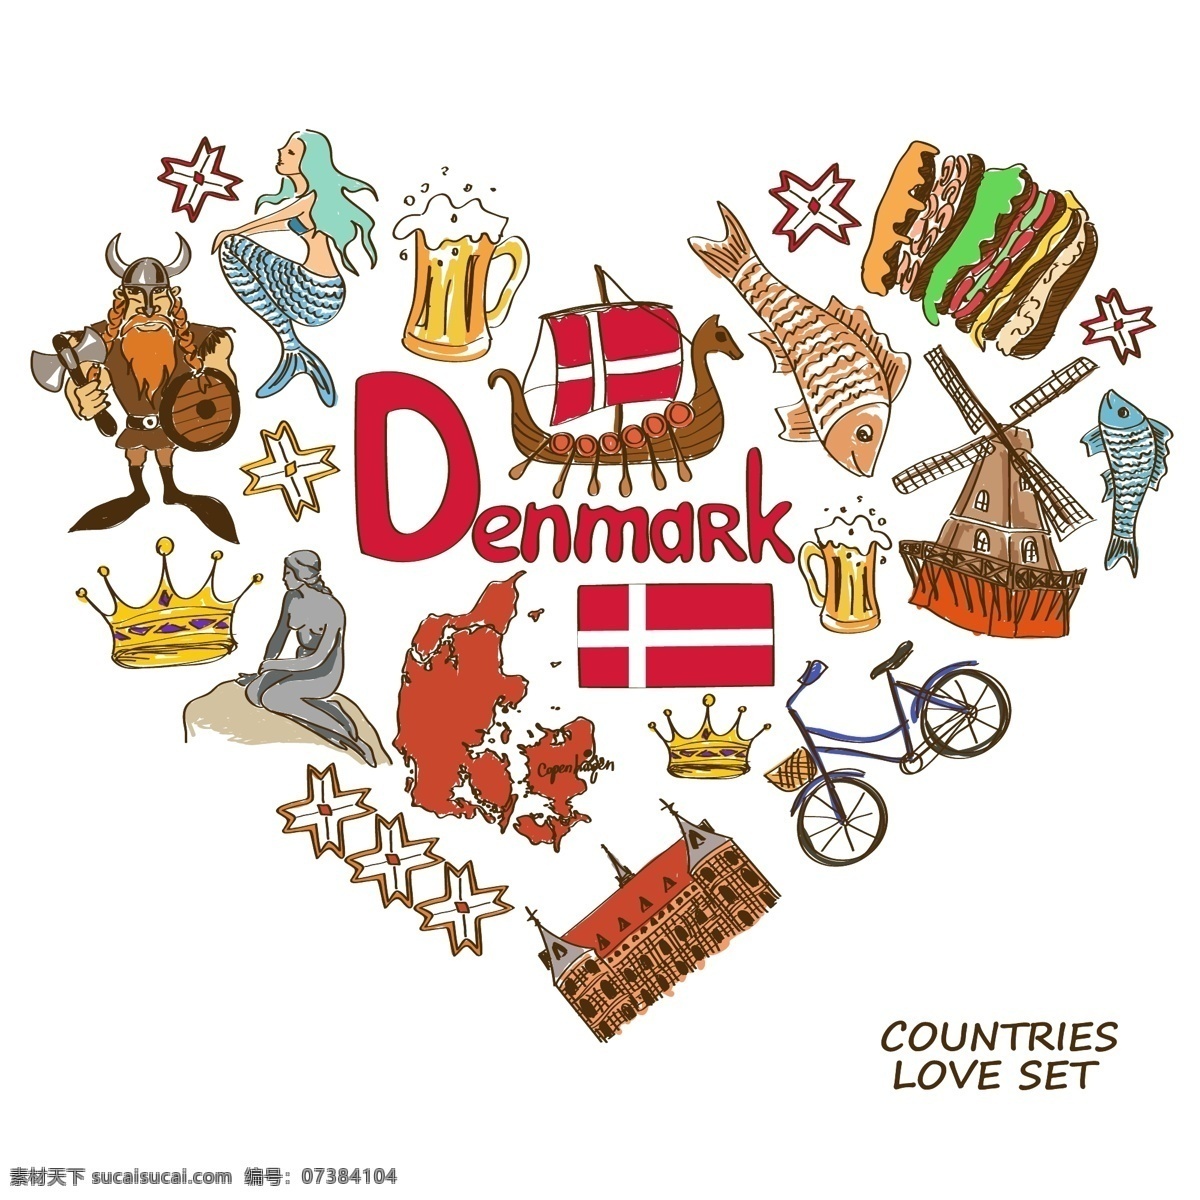 丹麦国家元素 丹麦 国家元素 国家象征 手绘 矢量 设计素材库 文化艺术 绘画书法